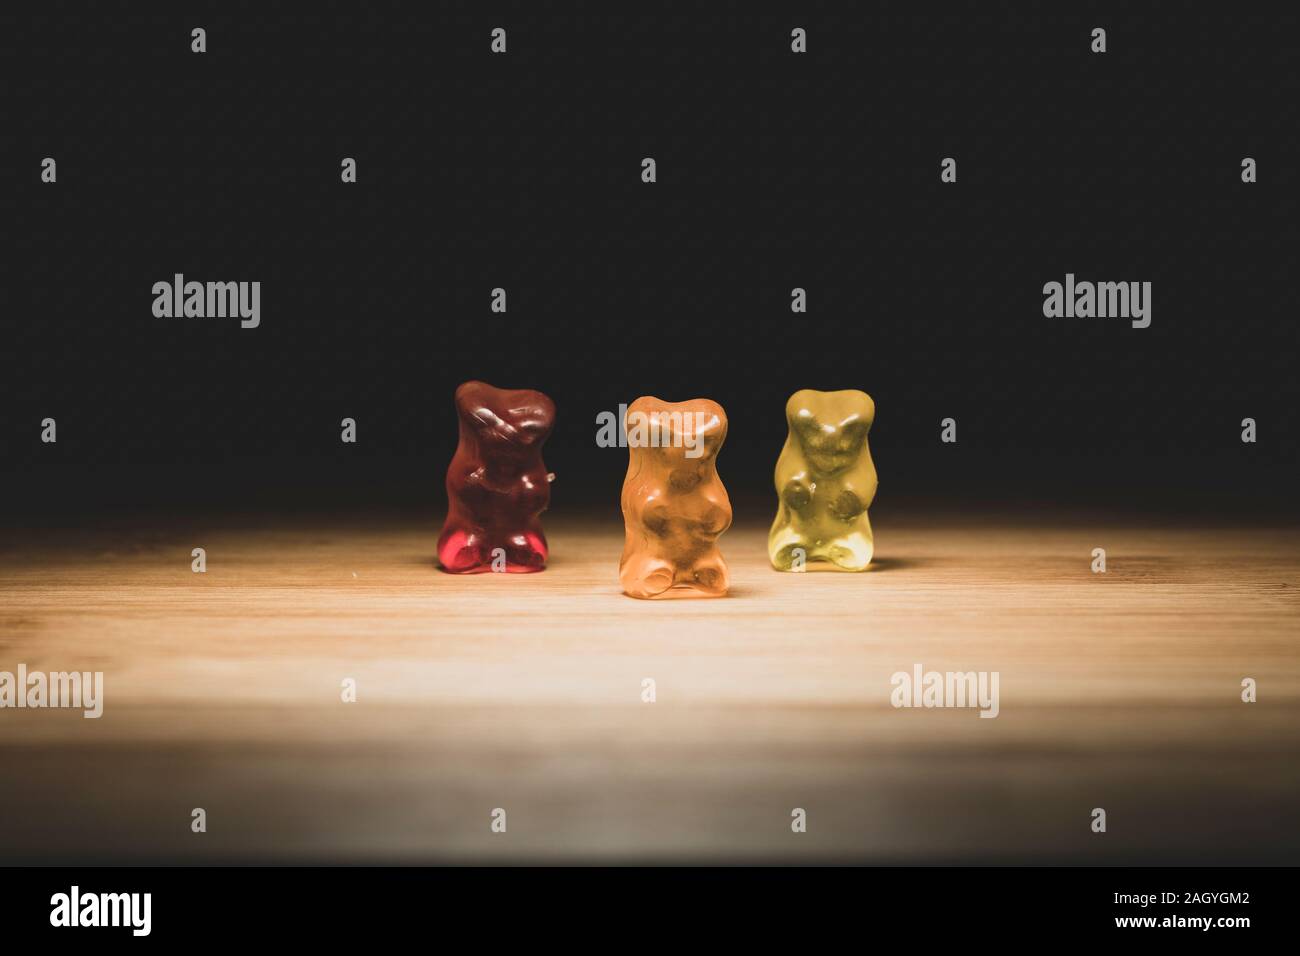 Un portrait de trois ours gummi de couleur différente, le bonbon est debout sur une planche en bois avec un éclairage qui dirait qu'ils sont sur une scène. Banque D'Images